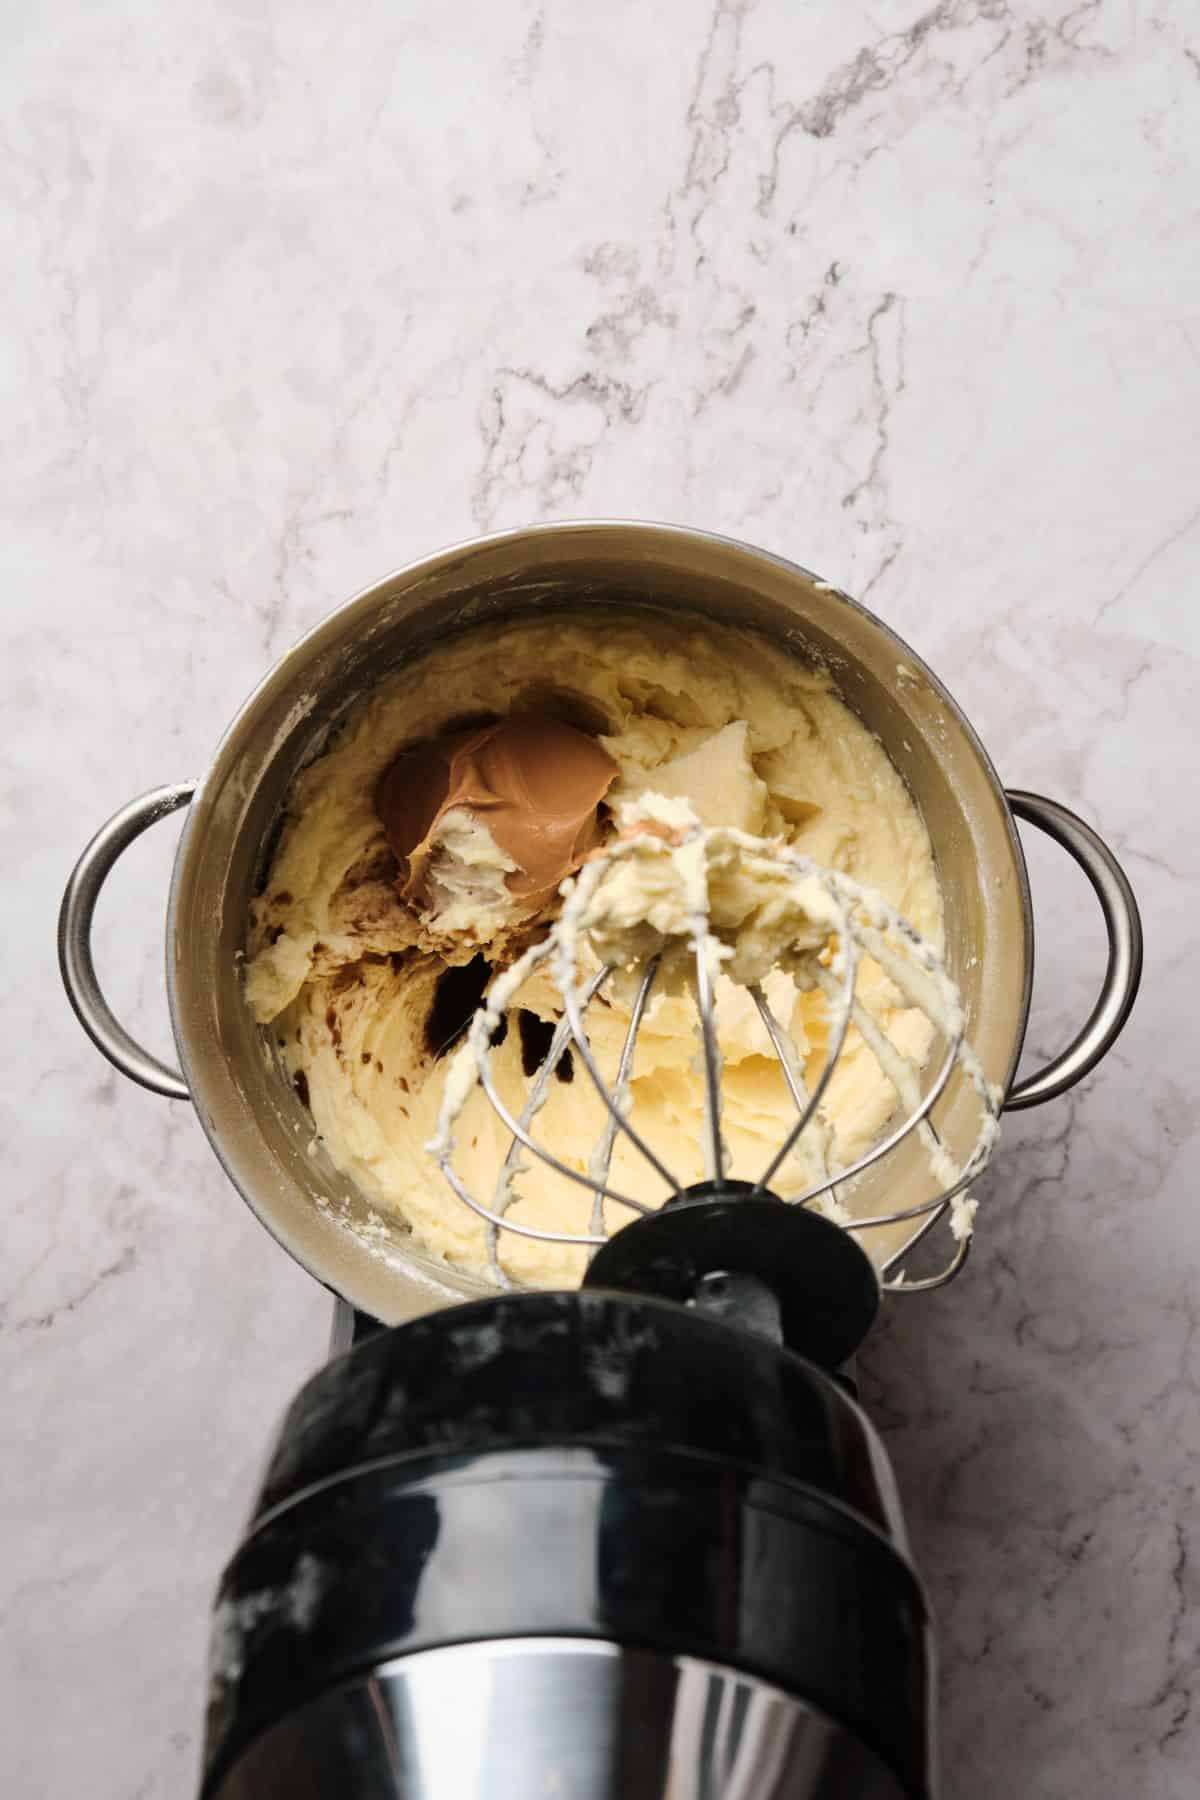 Peanut butter buttercream being blended in a mixer.